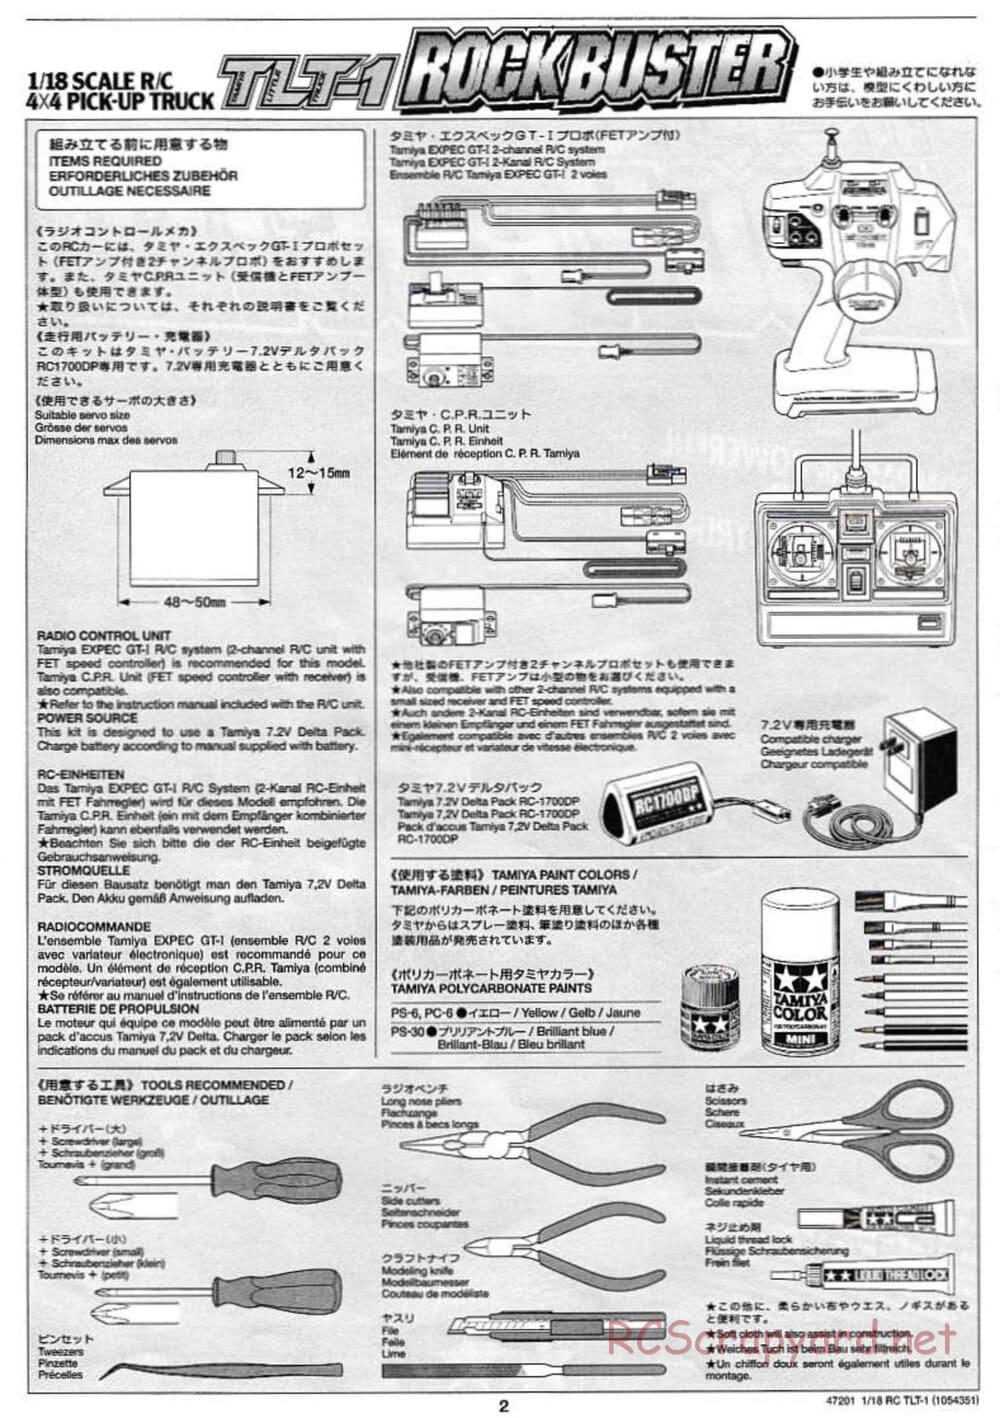 Tamiya - Rock Buster - TLT-1 Chassis - Manual - Page 2